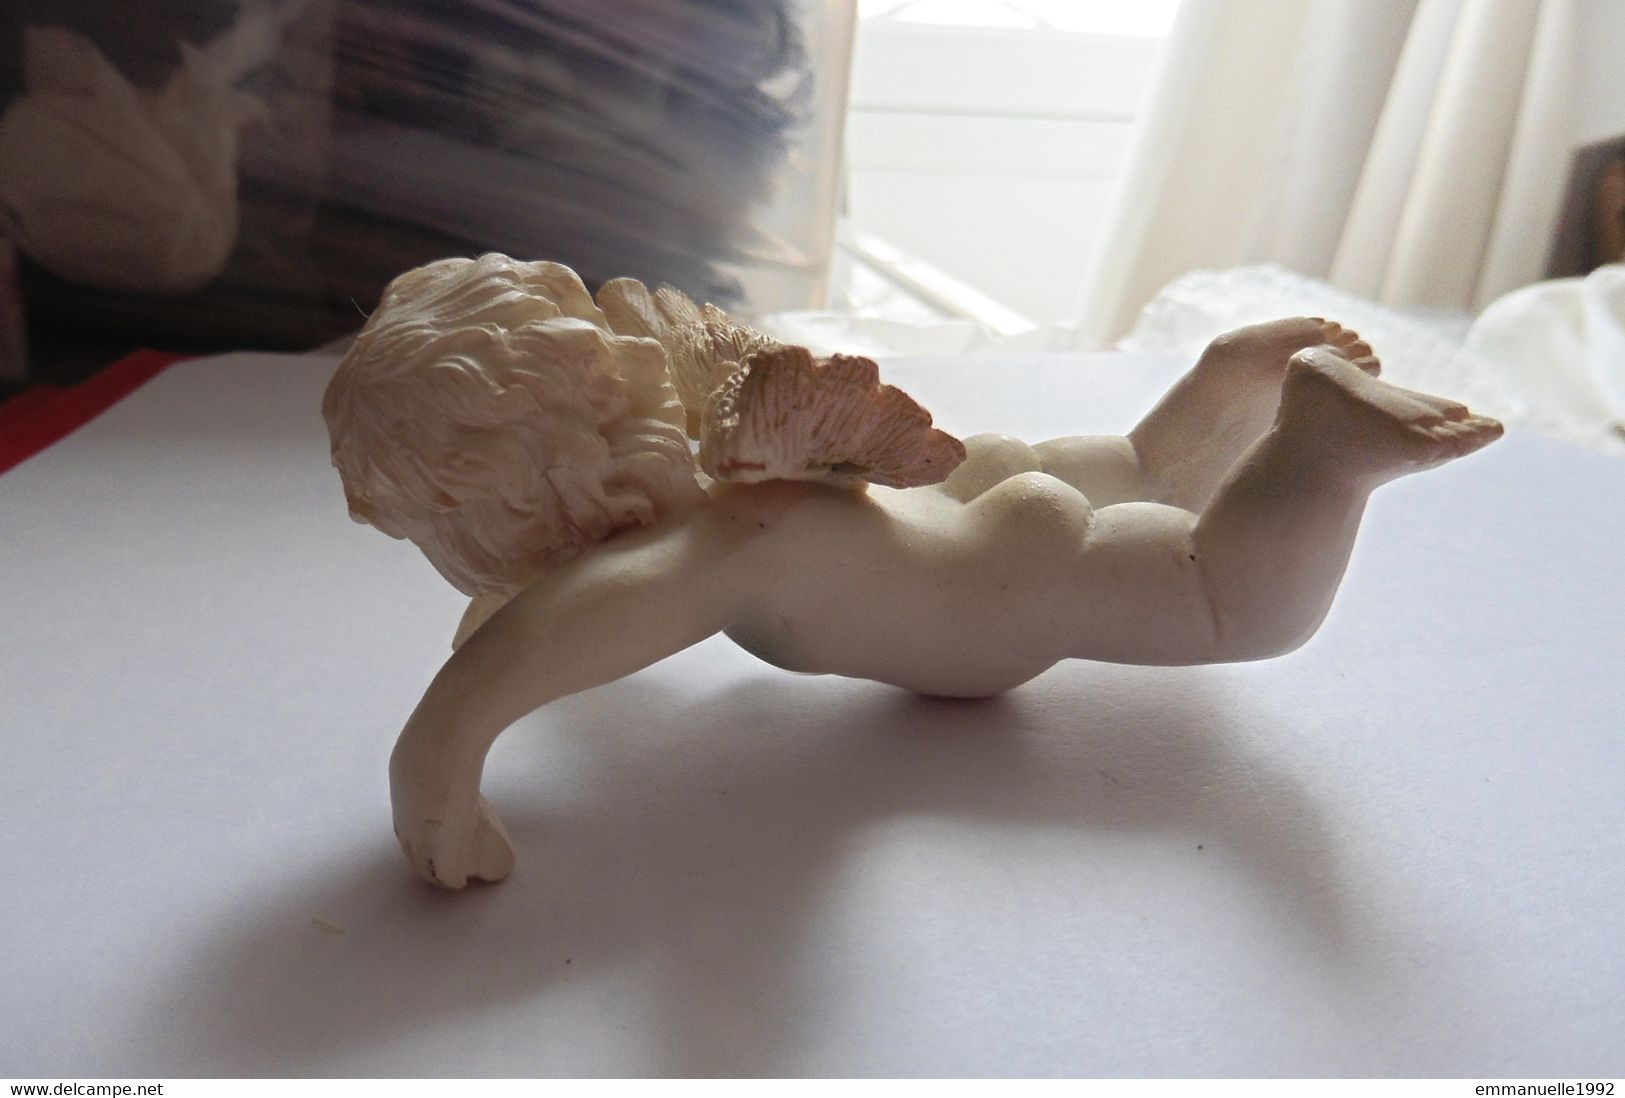 Bibelot Figurine Ange Blanc Ailé Sculpté Céramique Stuc Ou Résine Façon Plâtre - Objet Décoration Vitrine - Personnages